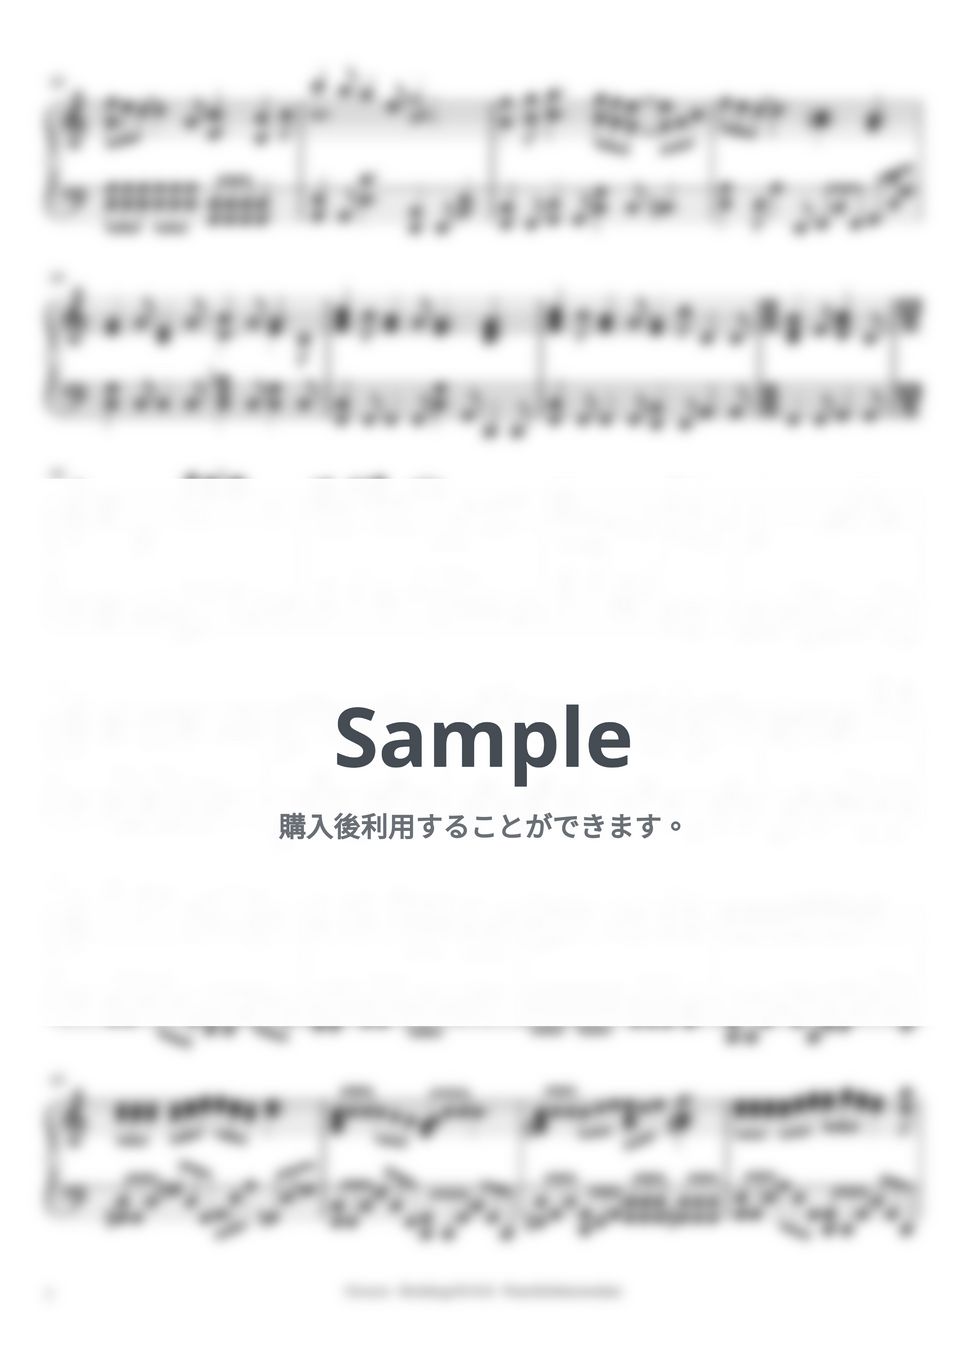 GReeeeN - Hoshikage no Yell (intermediate, piano) by Mopianic